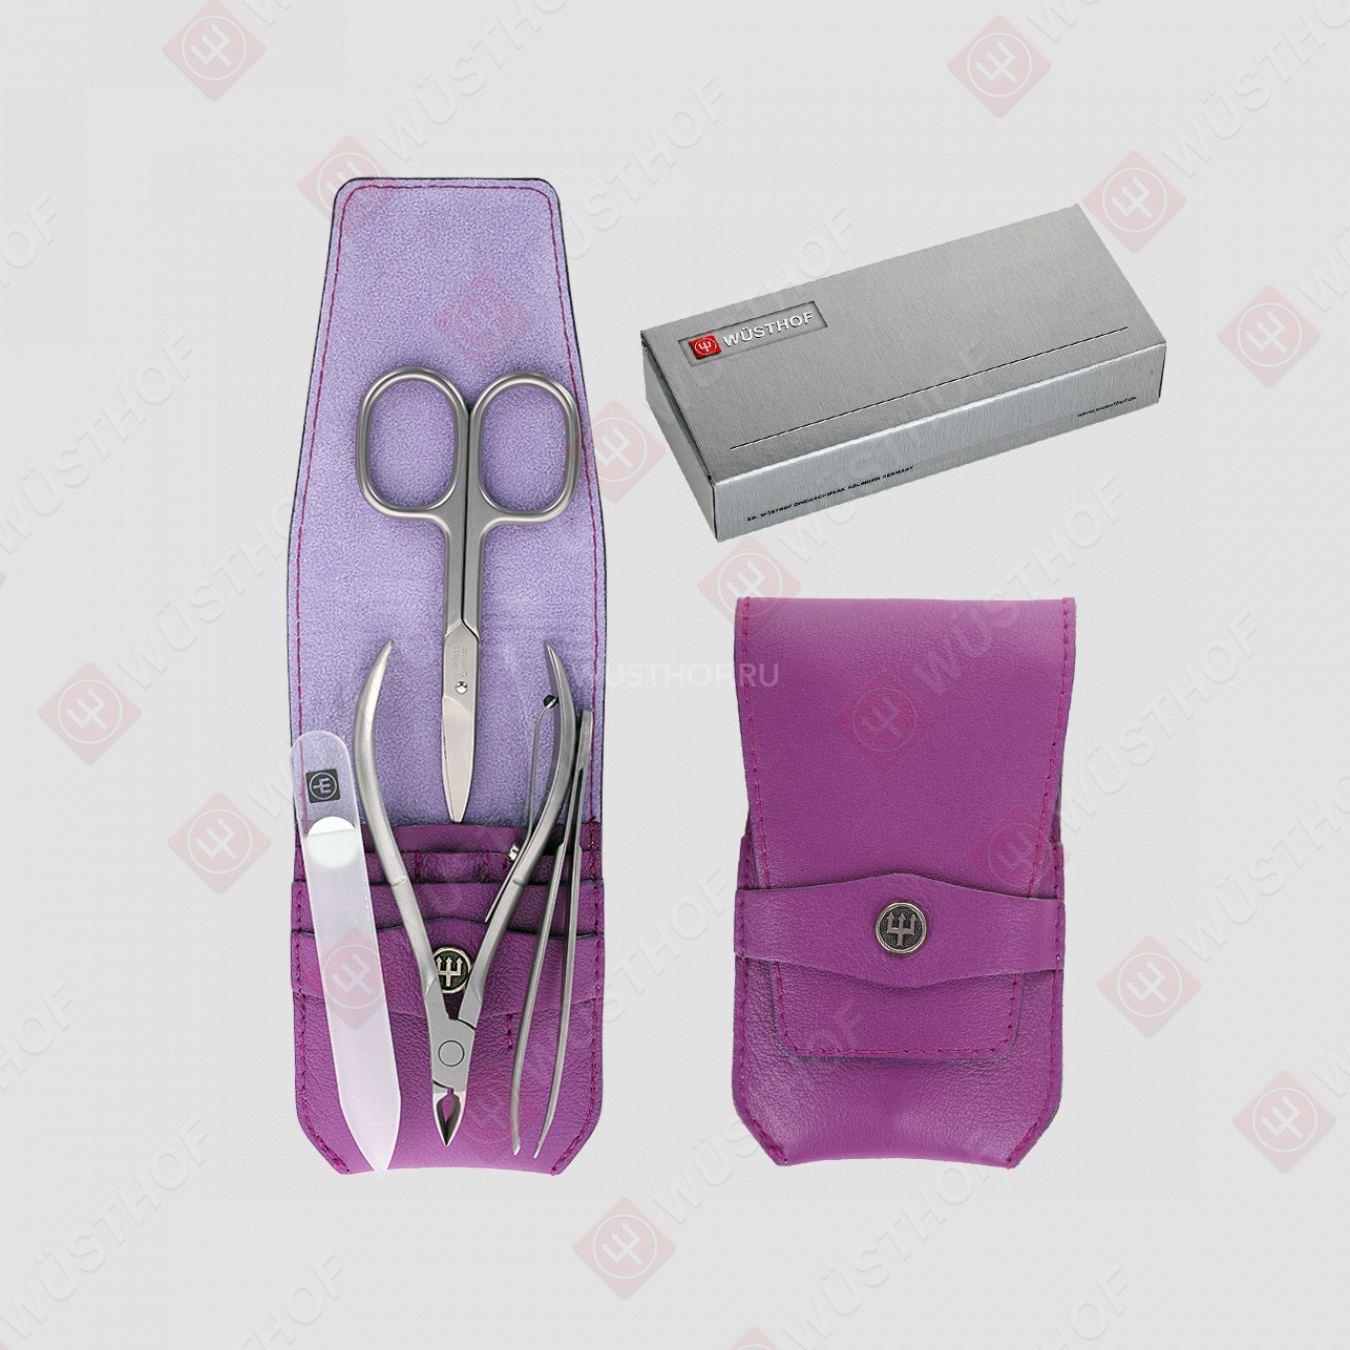 Набор маникюрный 4 предмета в кожаном футляре, цвет фиолетовый, серия Manicure sets, WUESTHOF, Германия